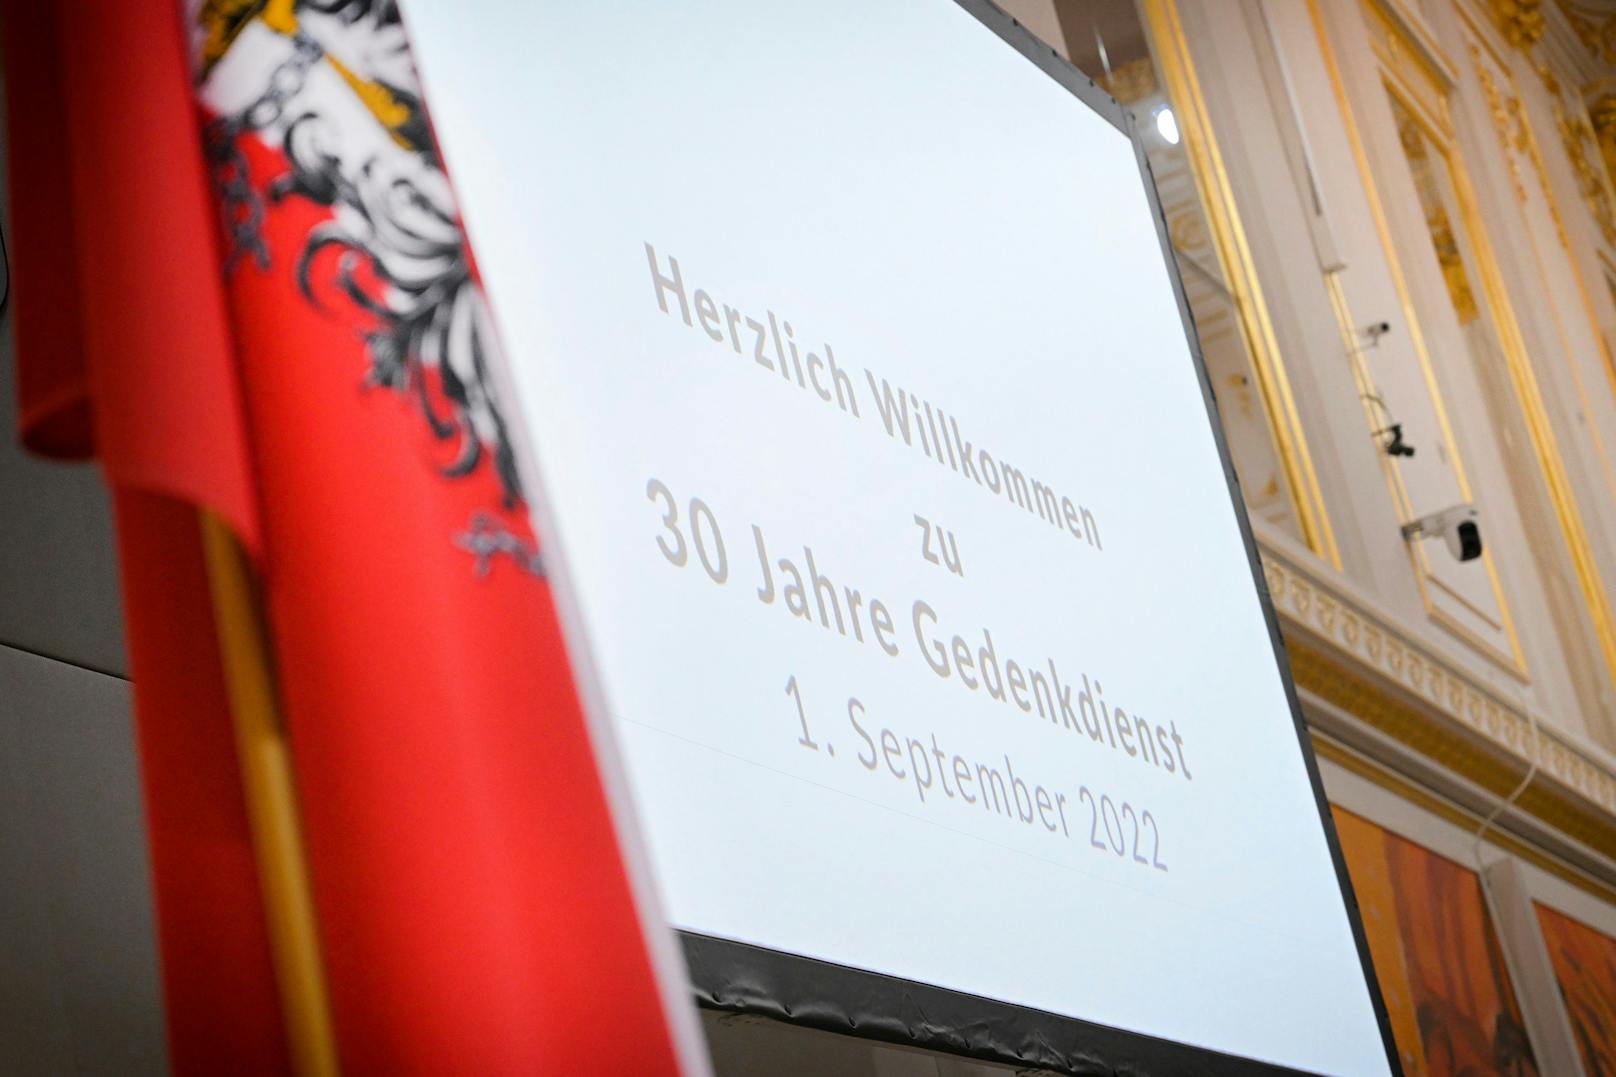 30 Jahre Gedenkdienst am 1. September 2022. Der Gedenkdienst ist die Visitenkarte Österreichs geworden.